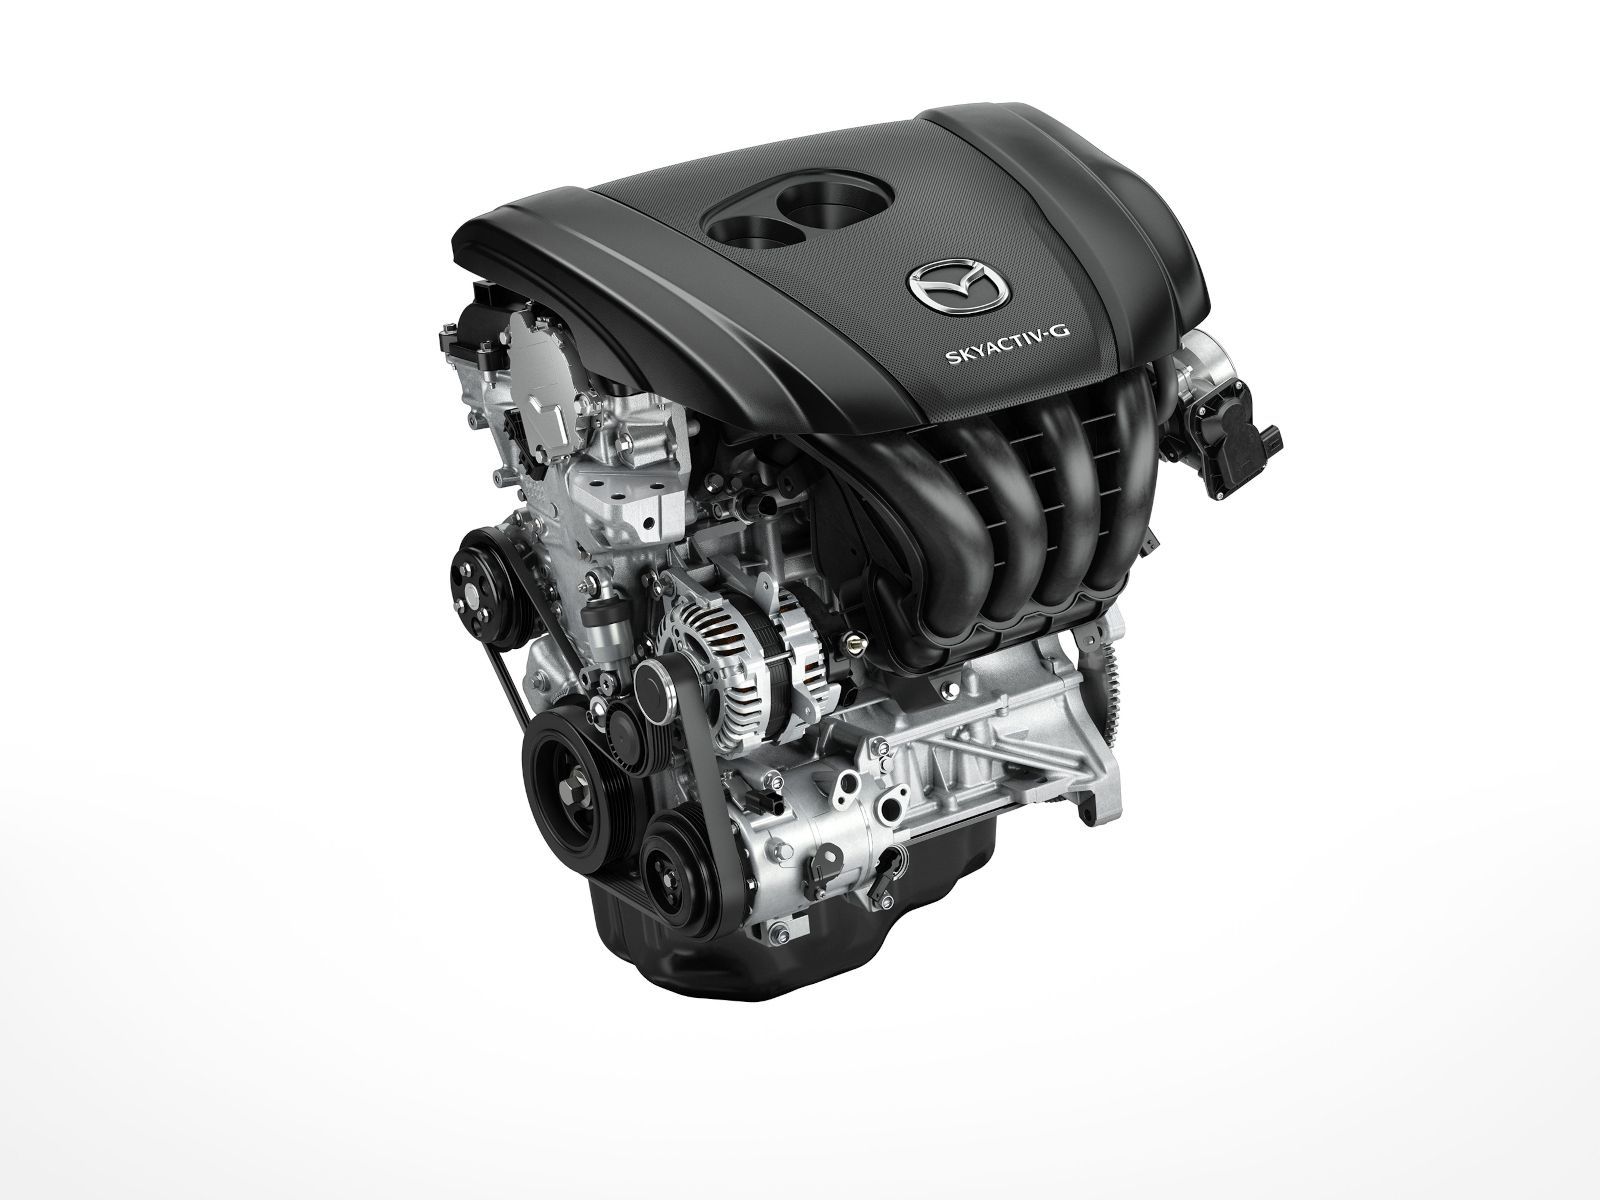 Benefits of Mazda's SKYACTIV Technology